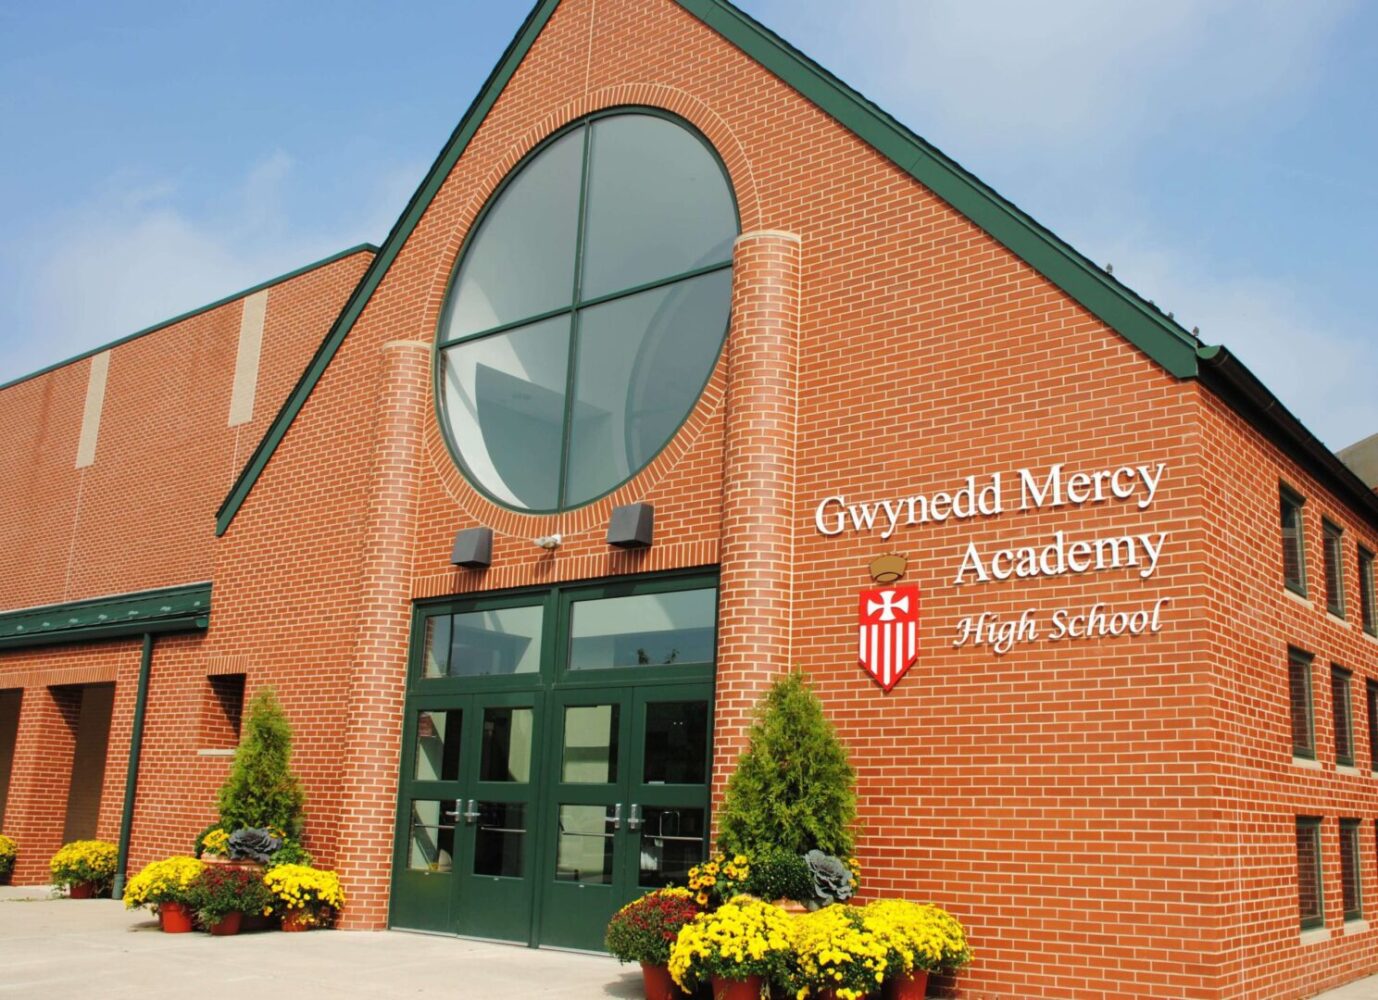 gwynedd-mercy-academy-high-school-unimates-education